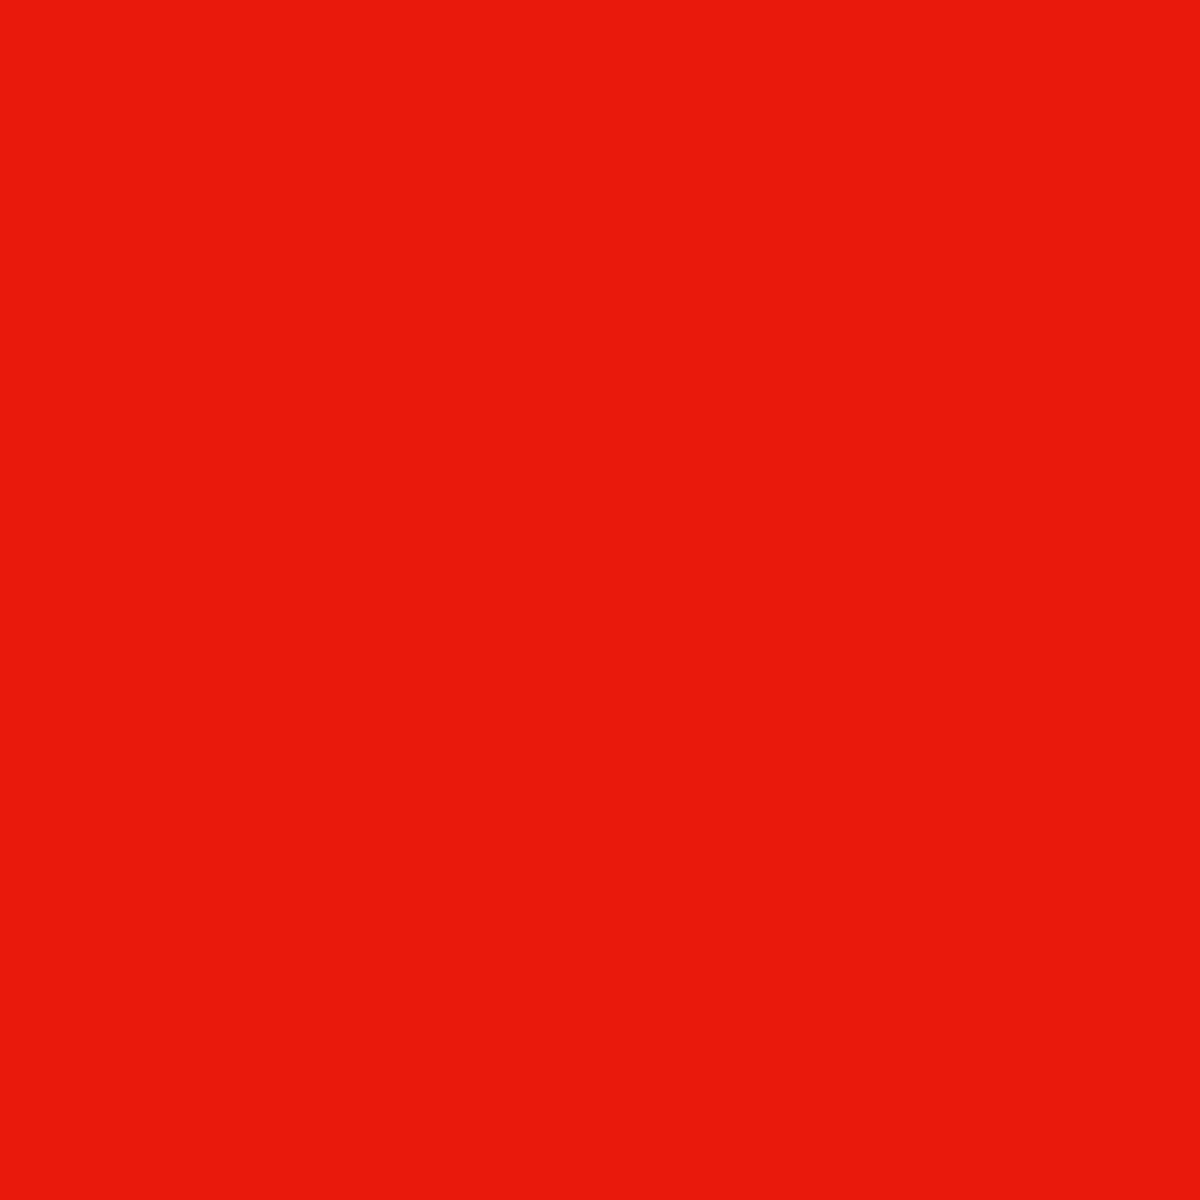 3M Envision Pellicola colorata traslucida 3730-43L Rosso pomodoro chiaro 1,22 m x 45,7 m